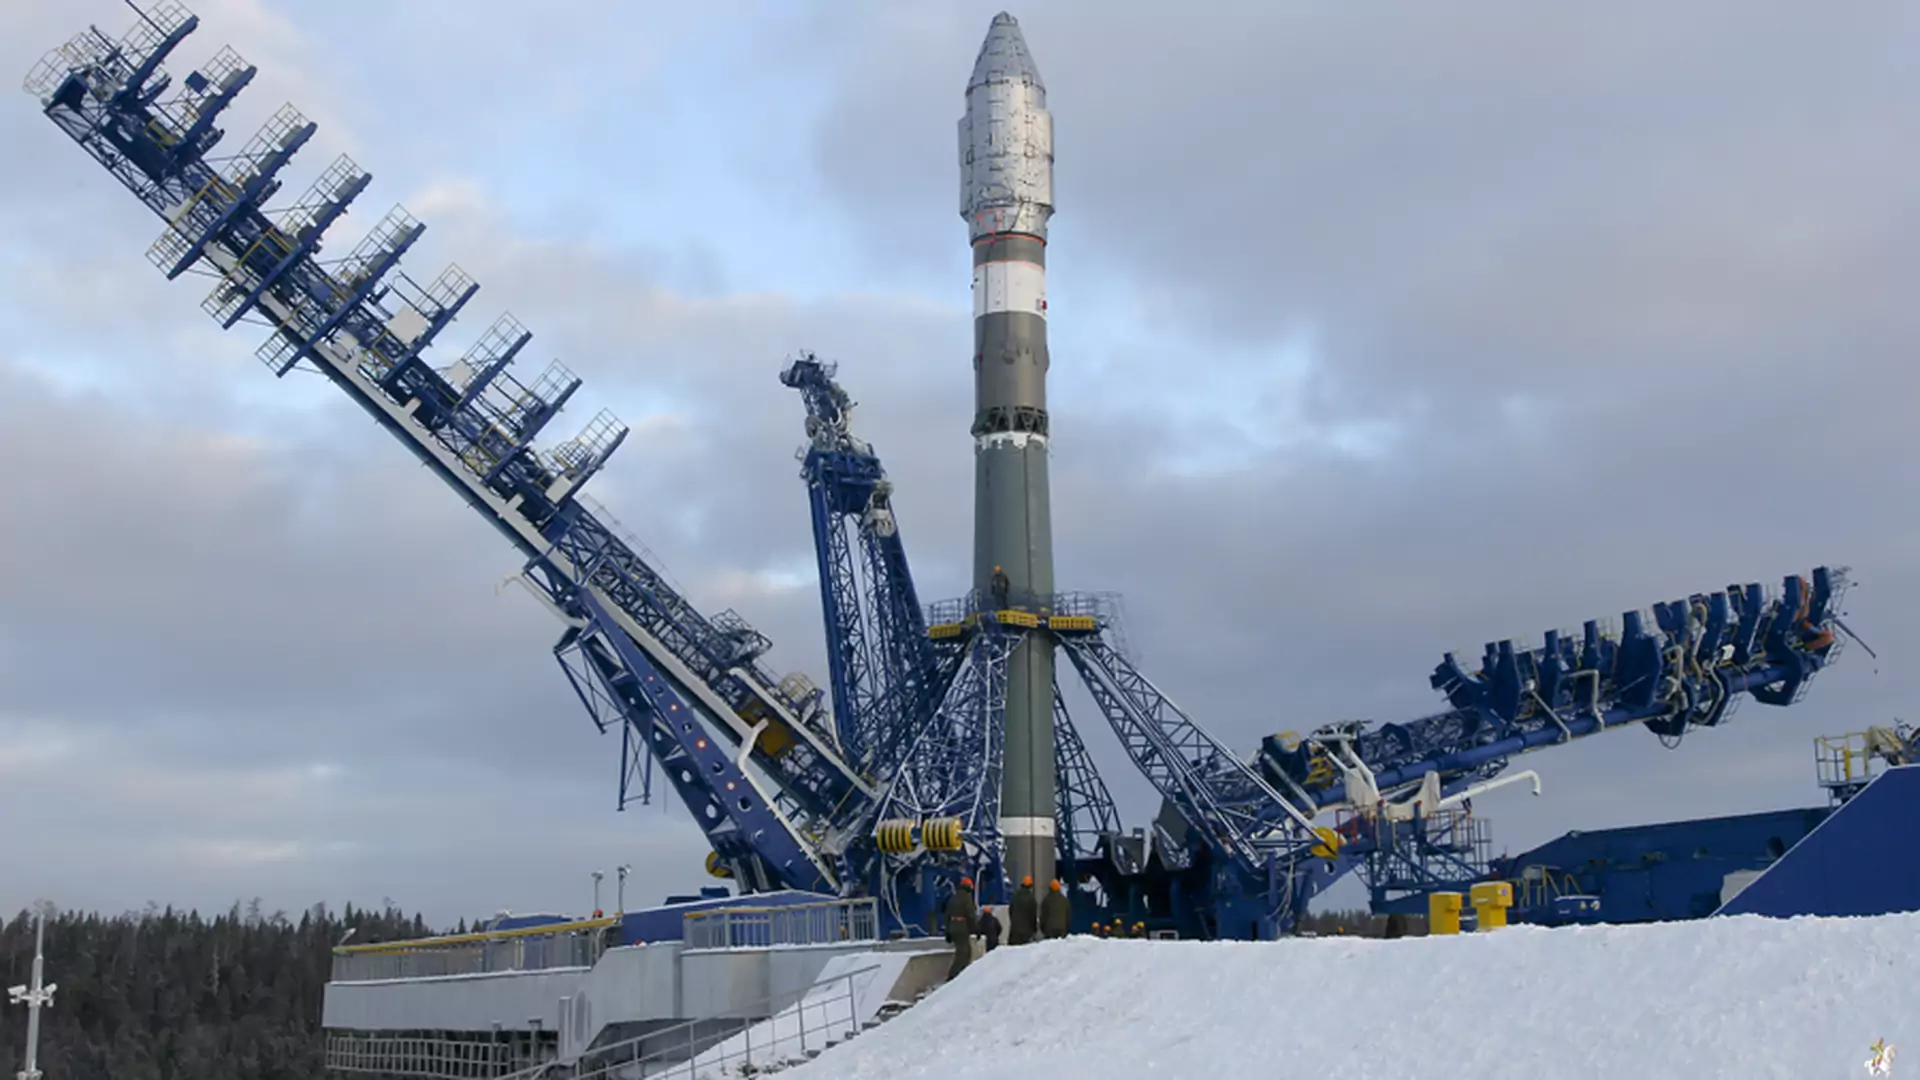 Rosja wystrzeliła na Księżyc pierwszy od prawie 50 lat statek kosmiczny